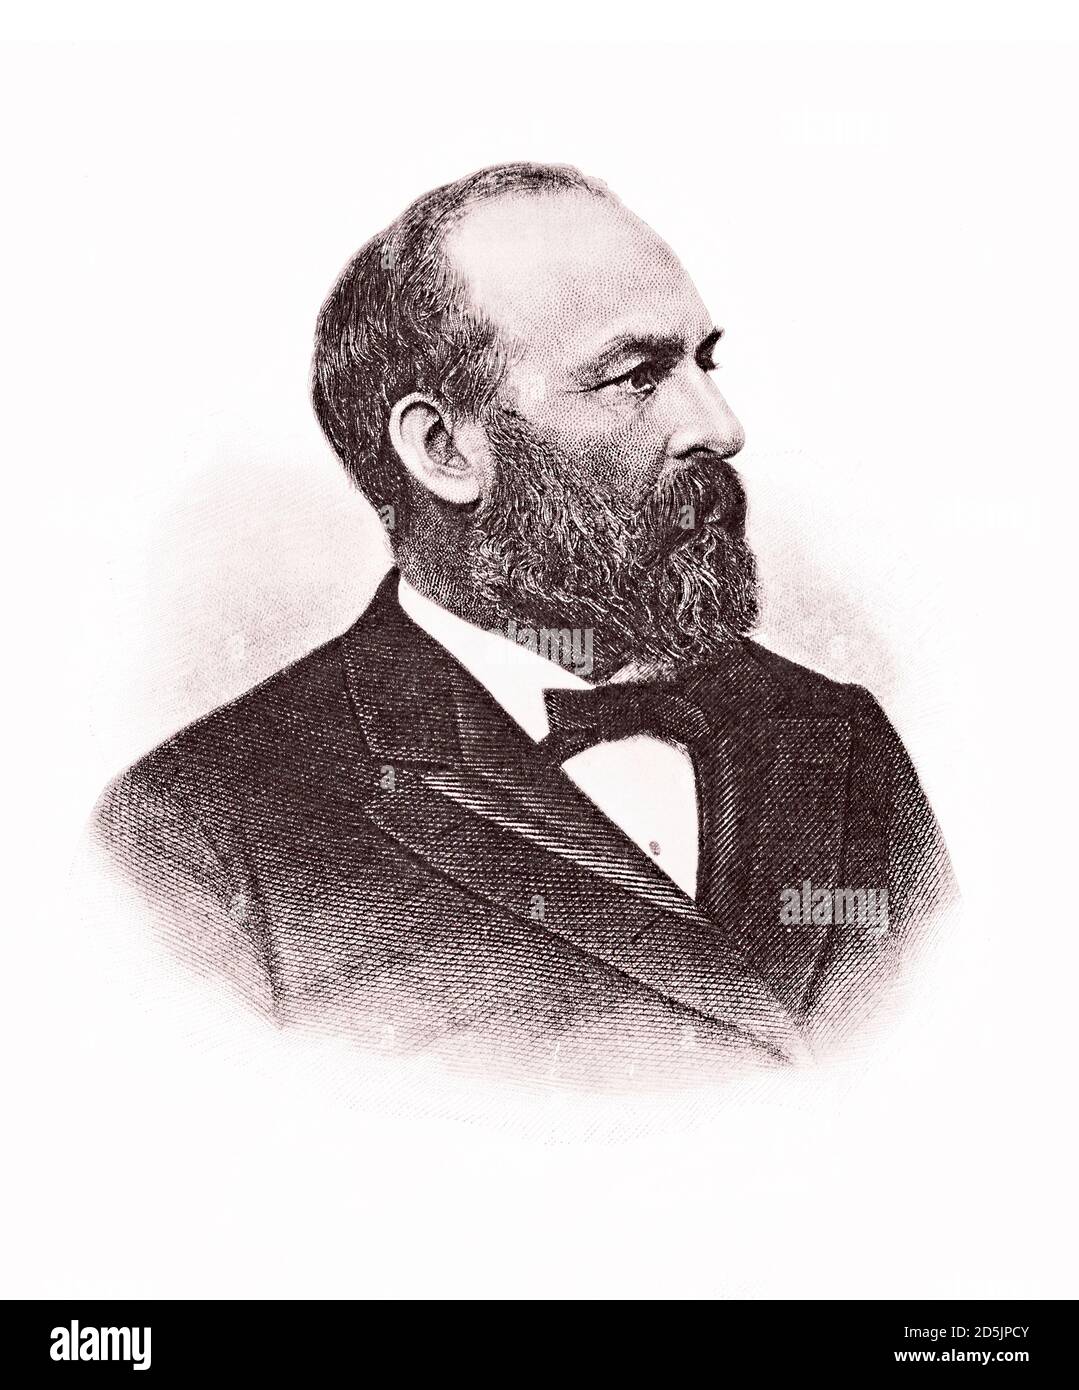 Ritratto del presidente James A. Garfield. James Abram Garfield (1831 – 1881) è stato il ventesimo presidente degli Stati Uniti, servendo dal 4 marzo 1881, u Foto Stock